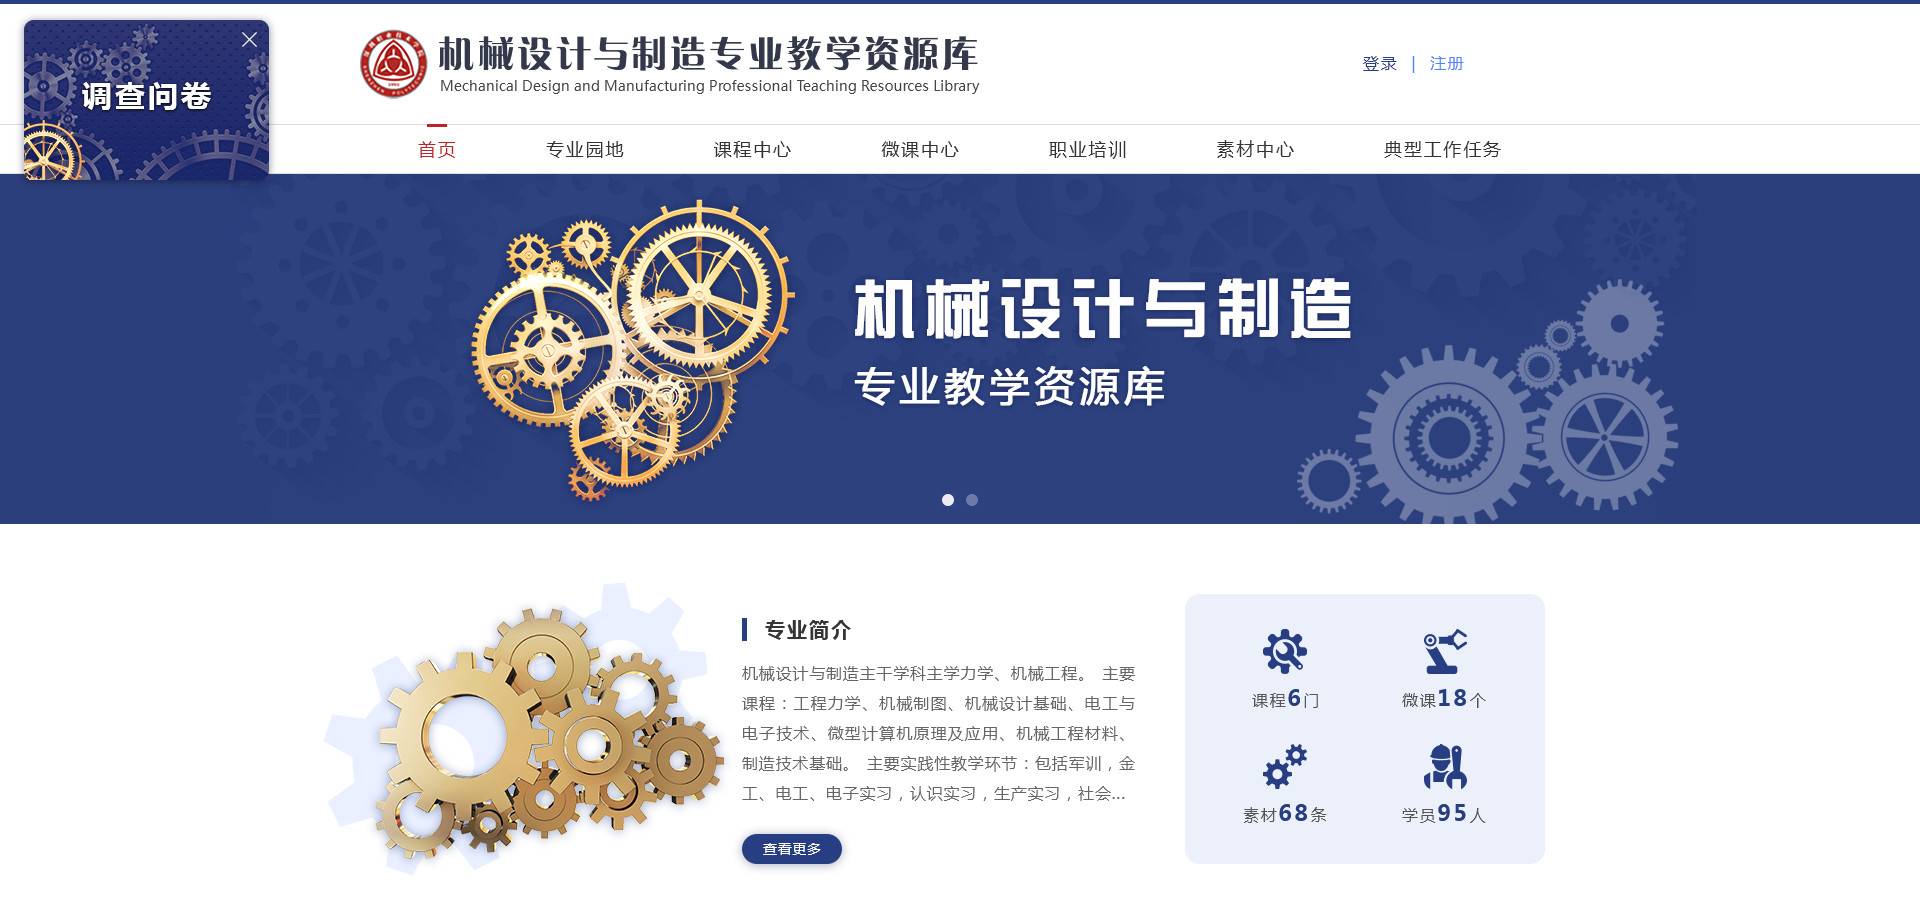 深圳职业技术学院-《机械设计与制造》专业教学资源库